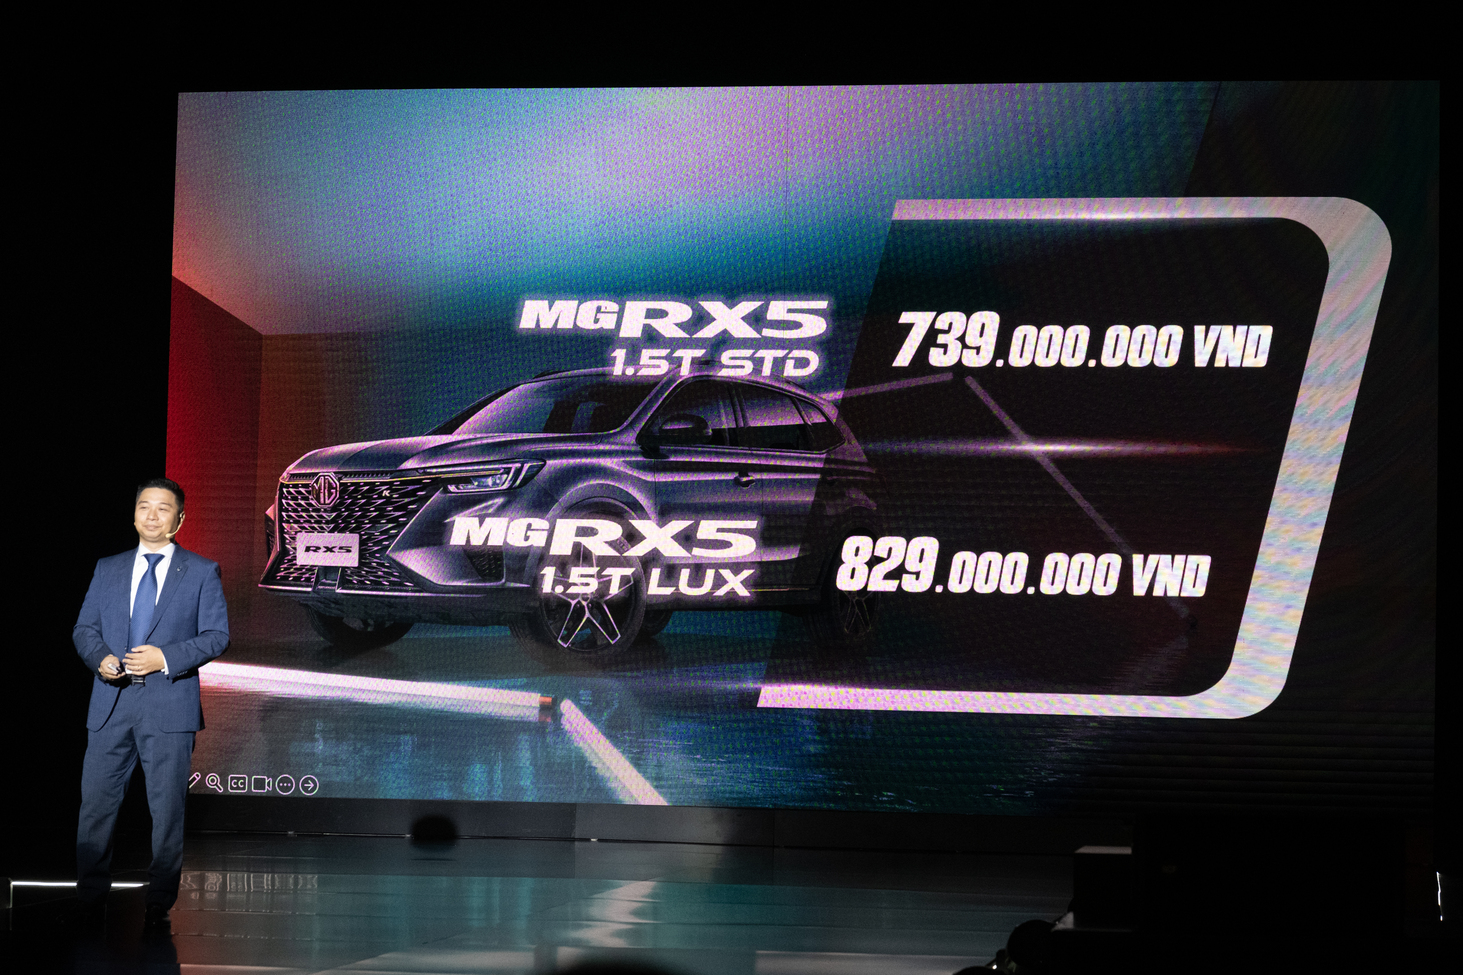 MG RX5 sẽ có giá từ 739 triệu đồng